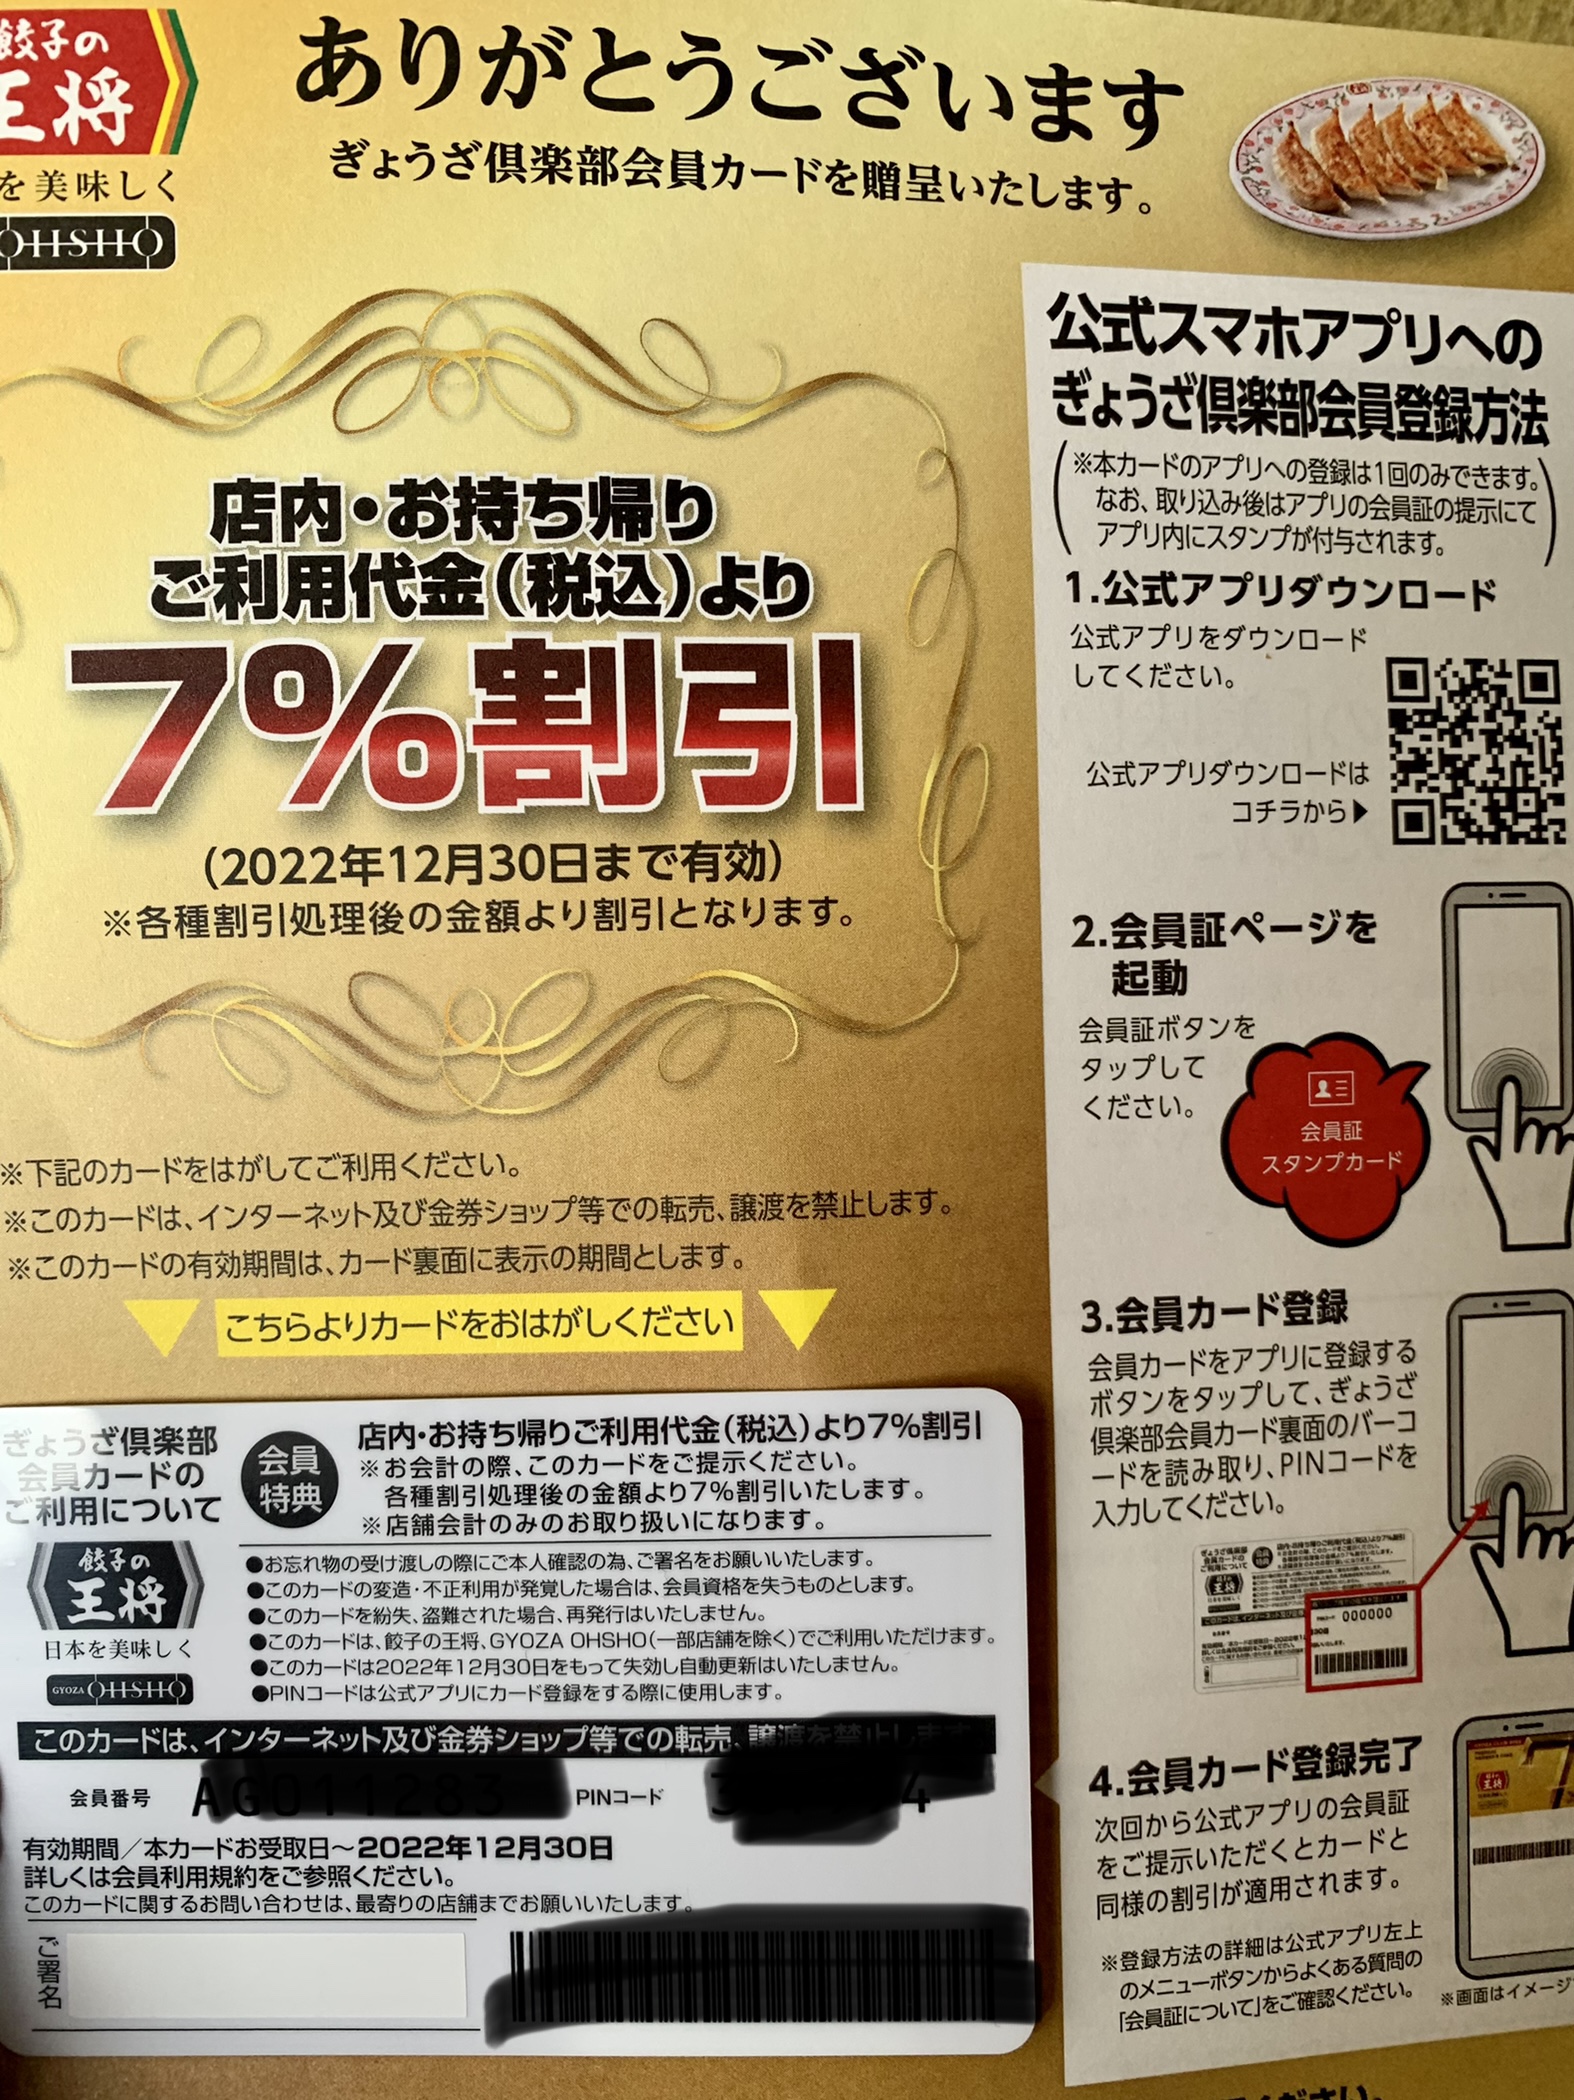 餃子の王将 7% 割引 王将 カード 餃子 - 通販 - guianegro.com.br